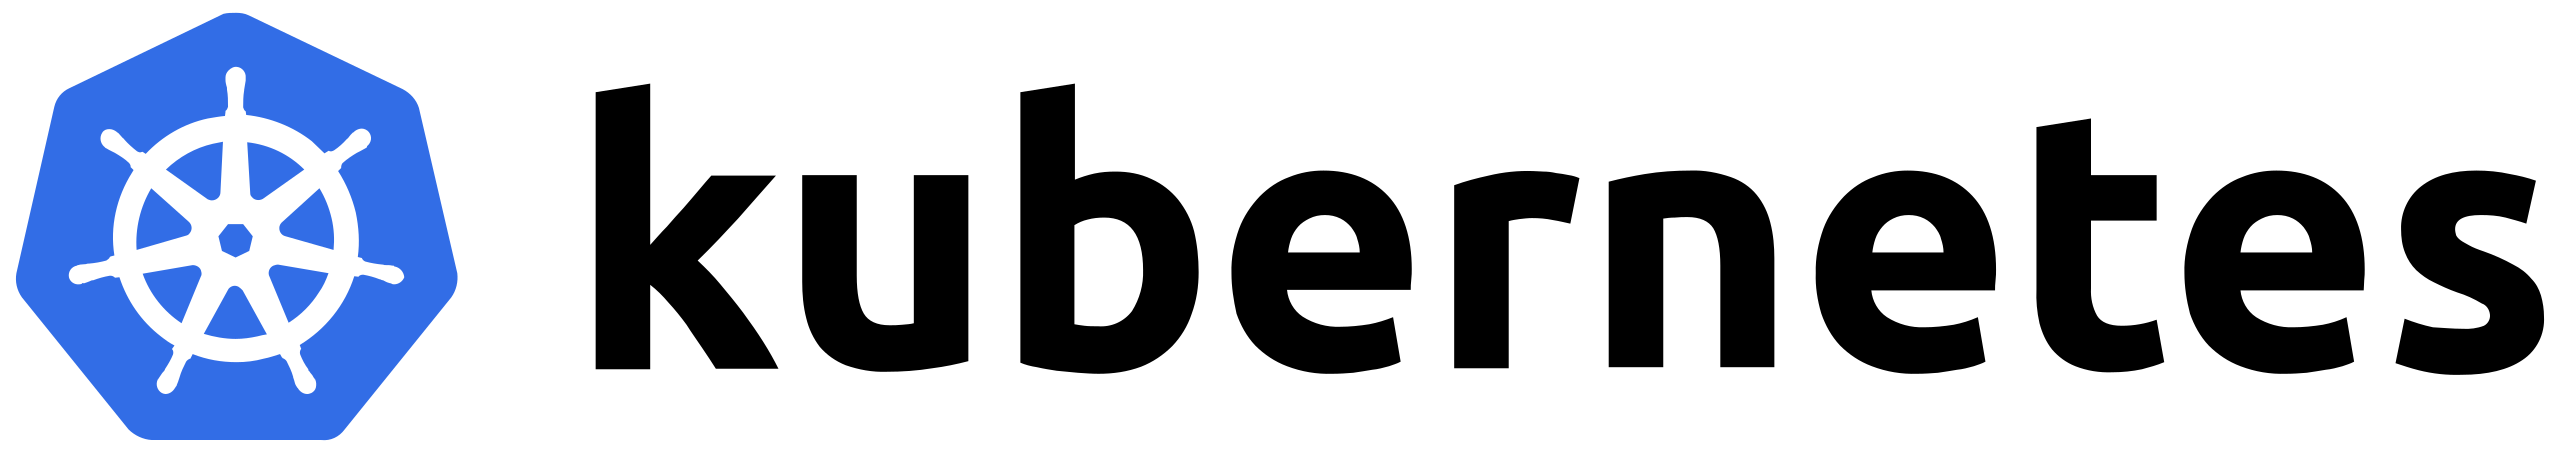 Kubernetes vendor logo